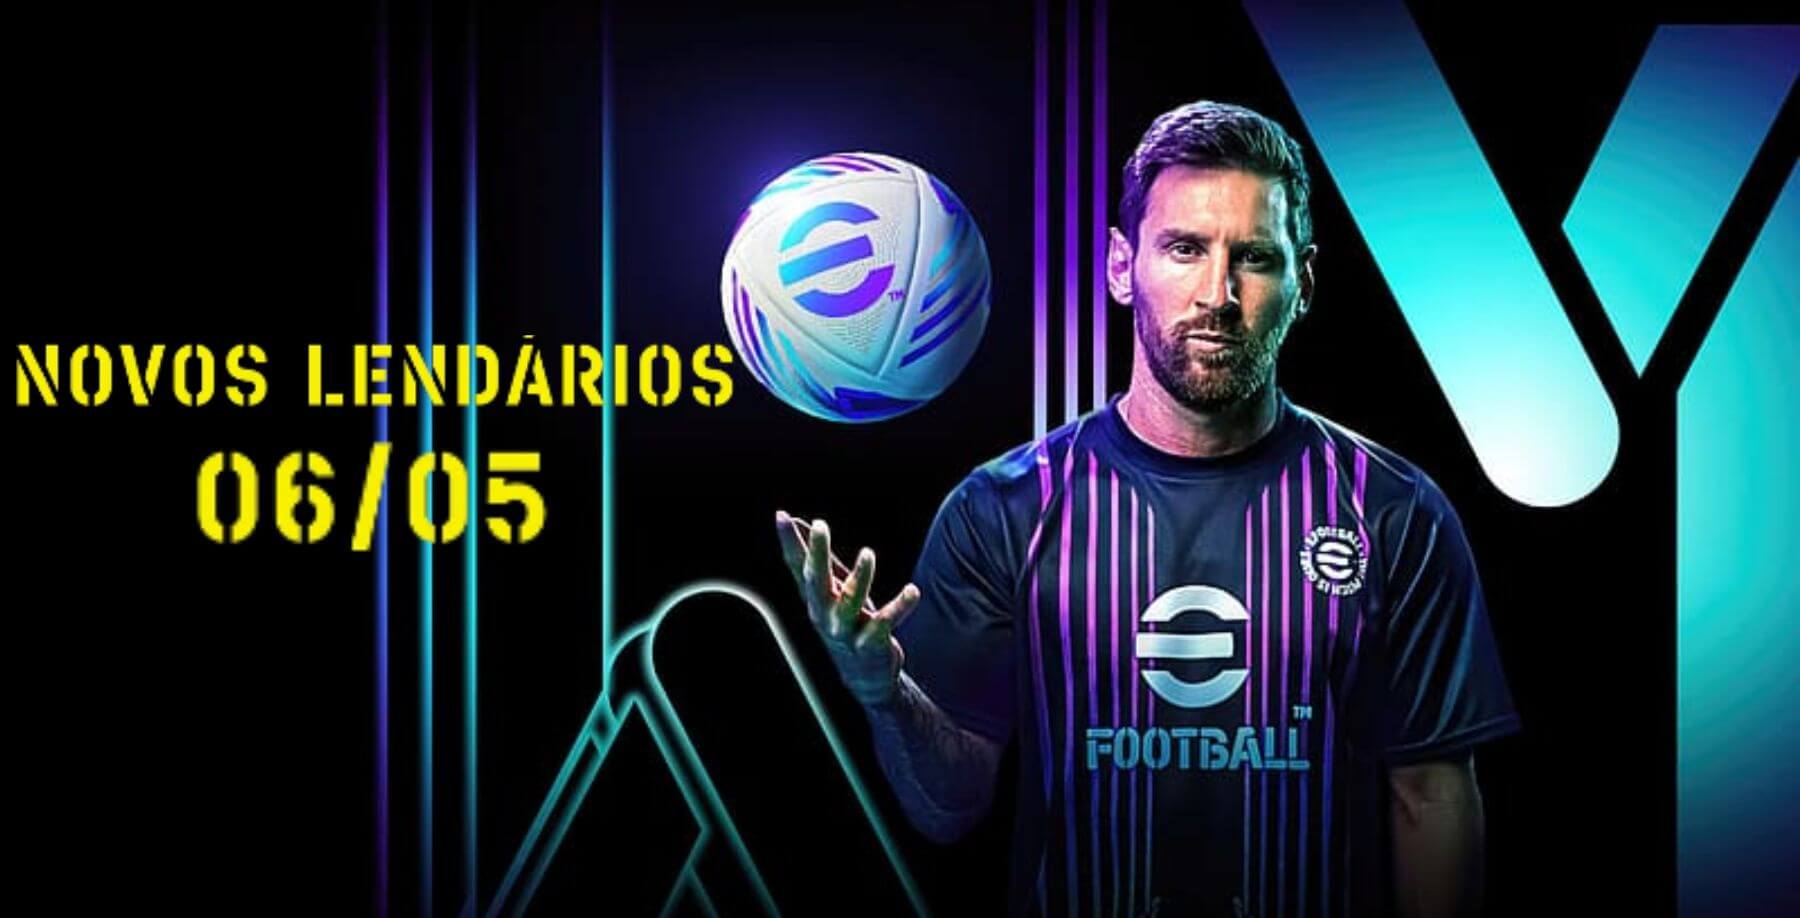 Background do jogo eFootball 2024 com Messi e o título dos jogadores lendários da box da data 06/05